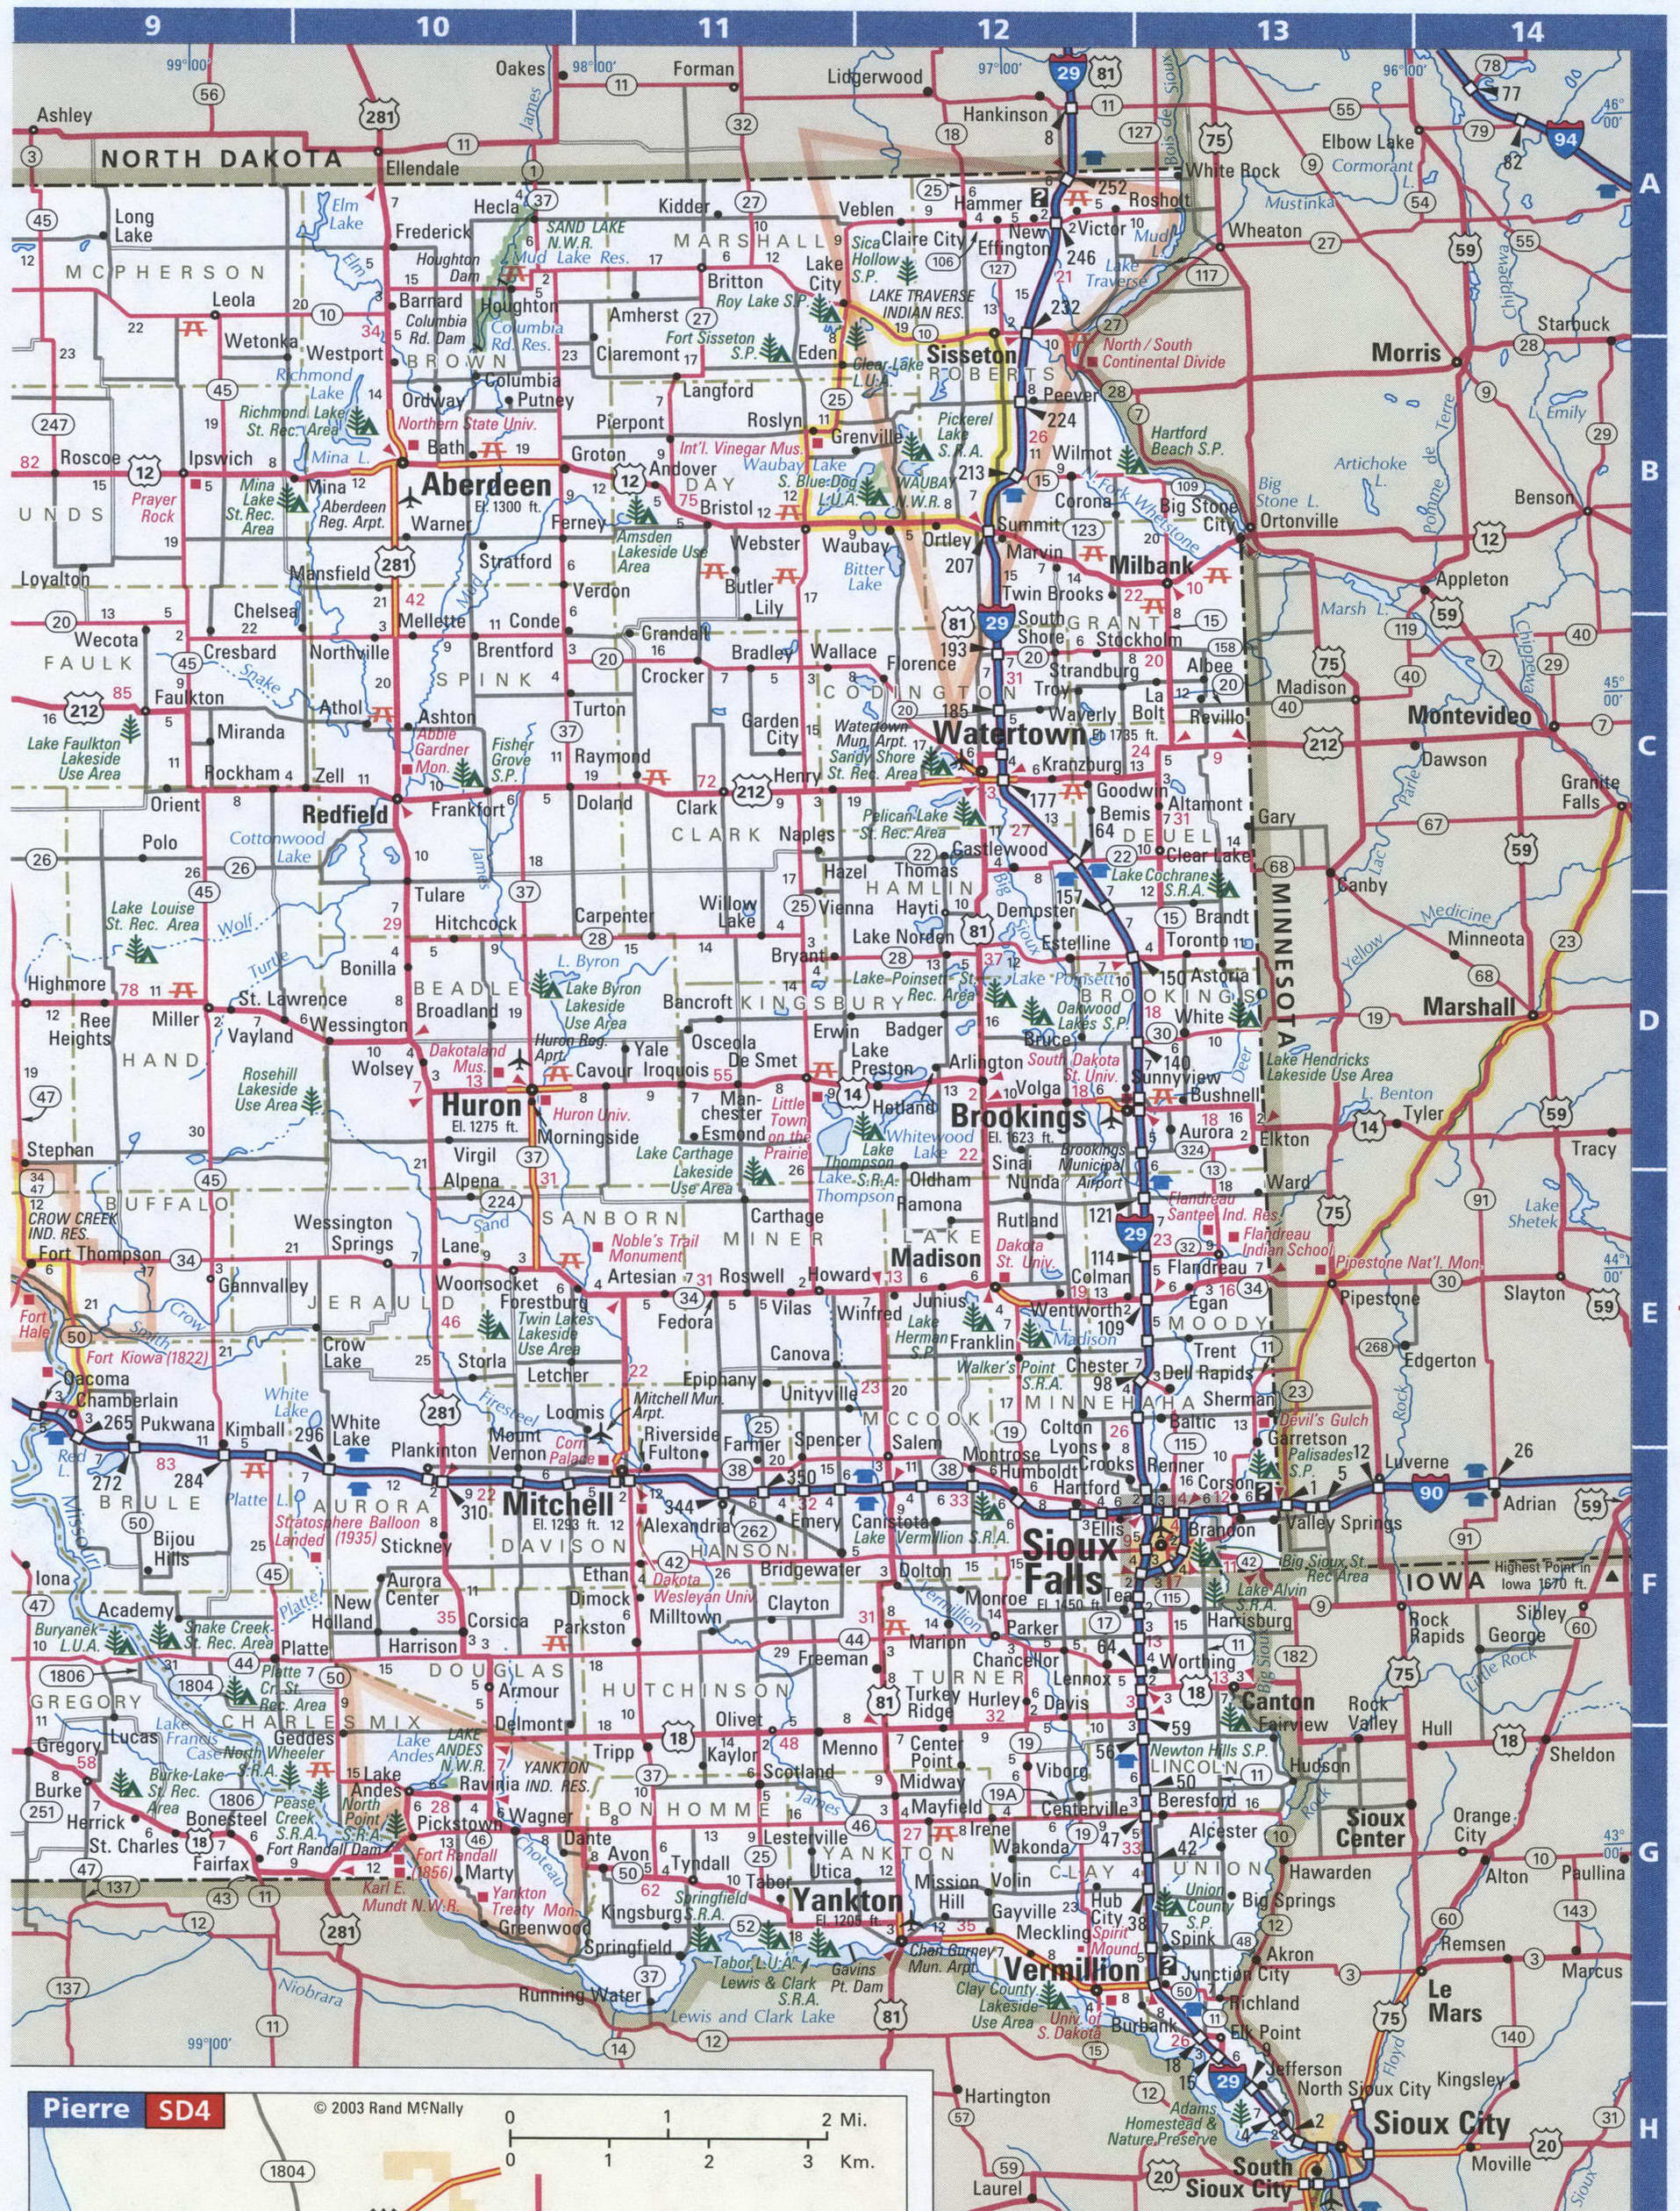 South Dakota detailed roads map.South Dakota state highway map